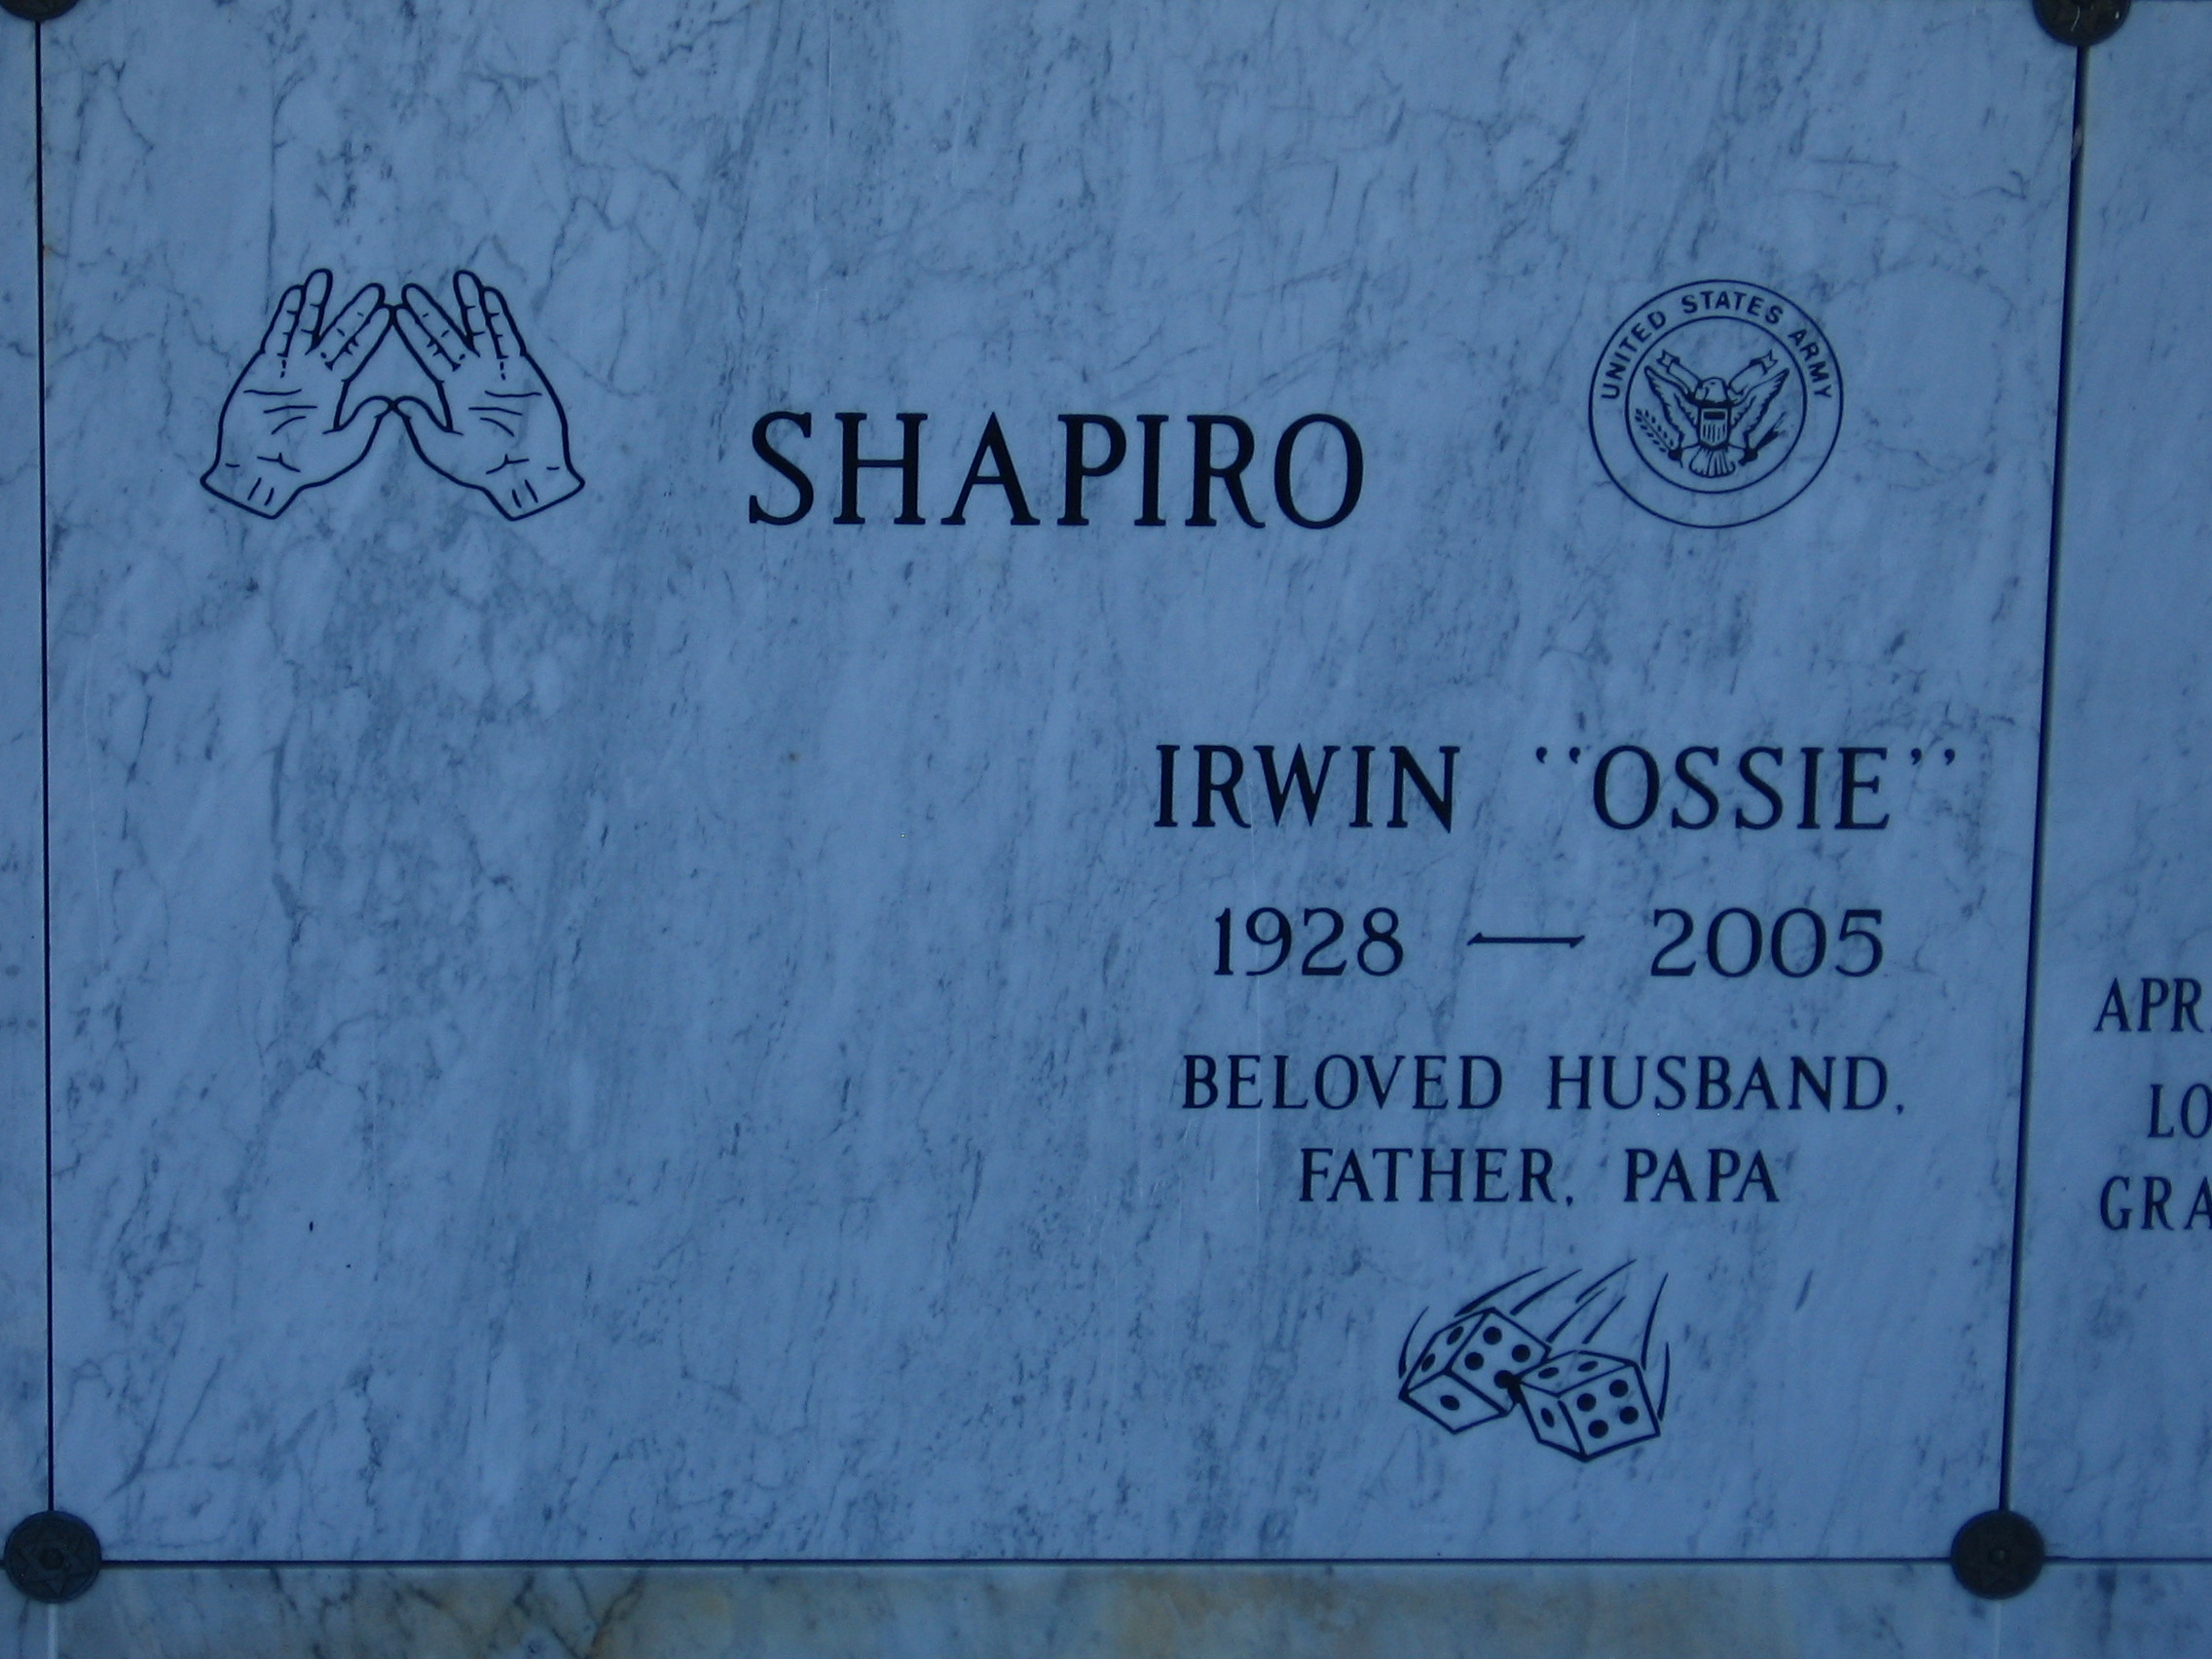 Irwin "Ossie" Shapiro